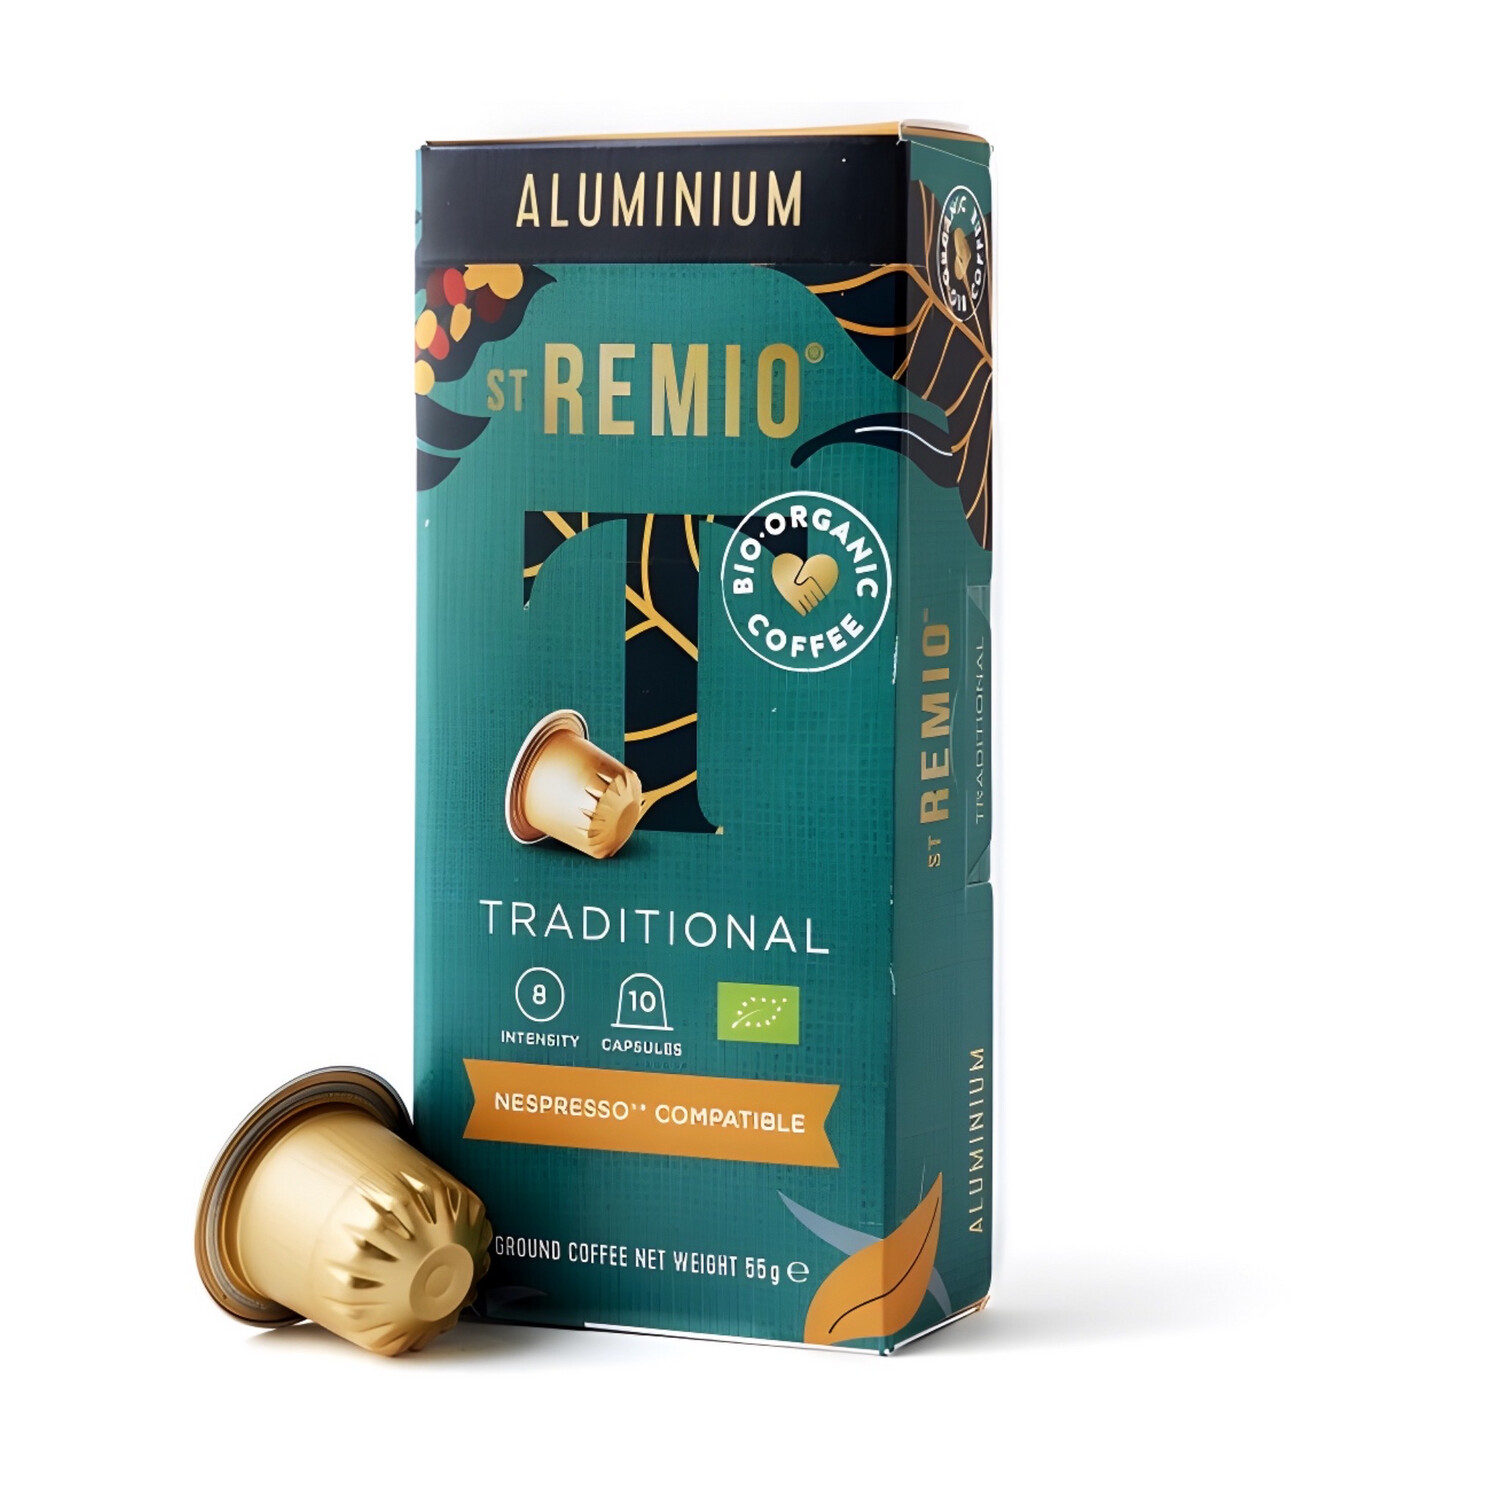 St. Remio Nespresso aluminum Traditional signature x10